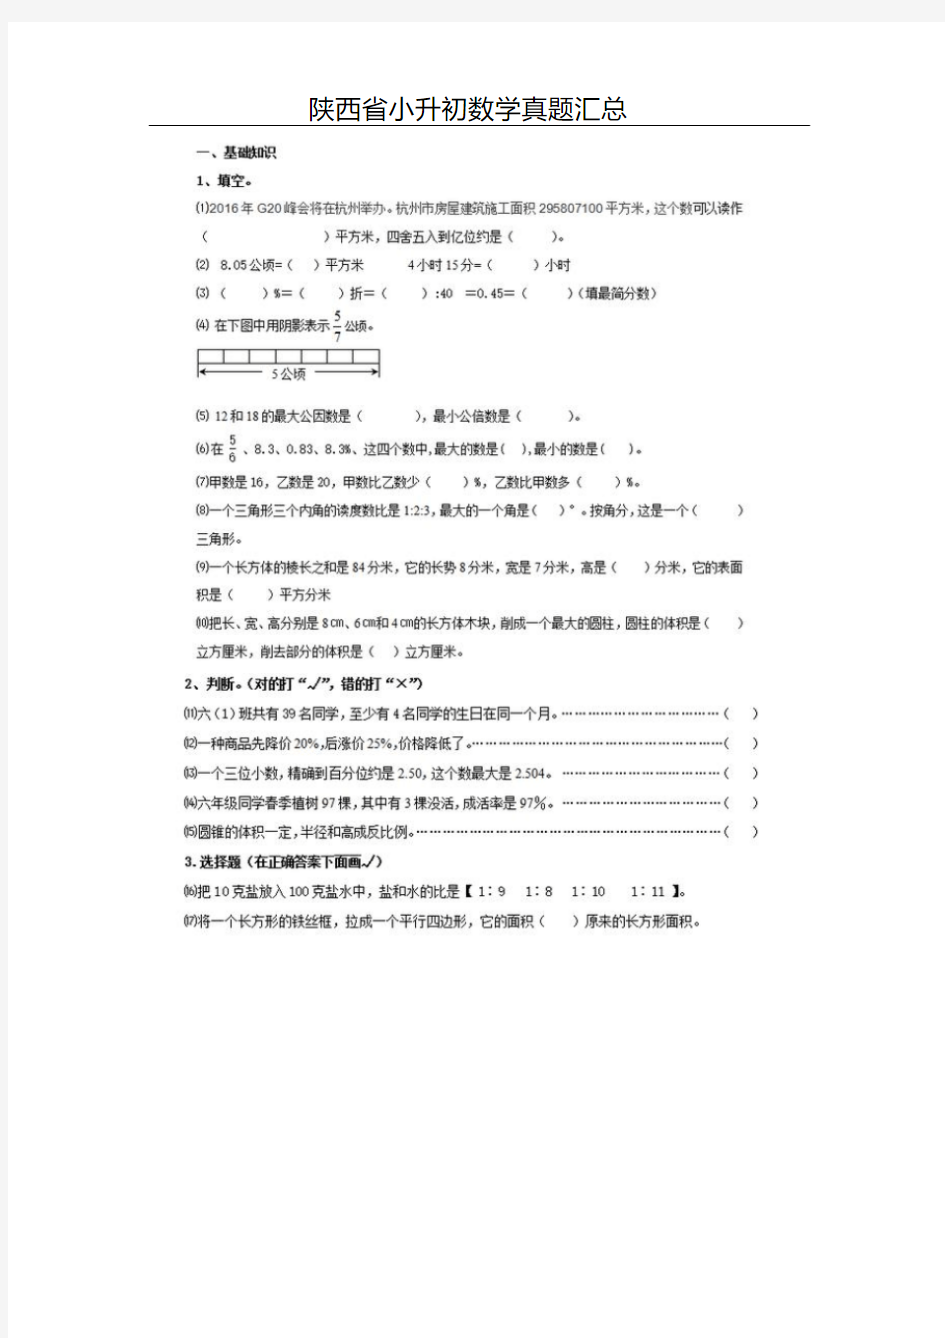 【精选】陕西省小升初数学真题汇总(20200906093218)